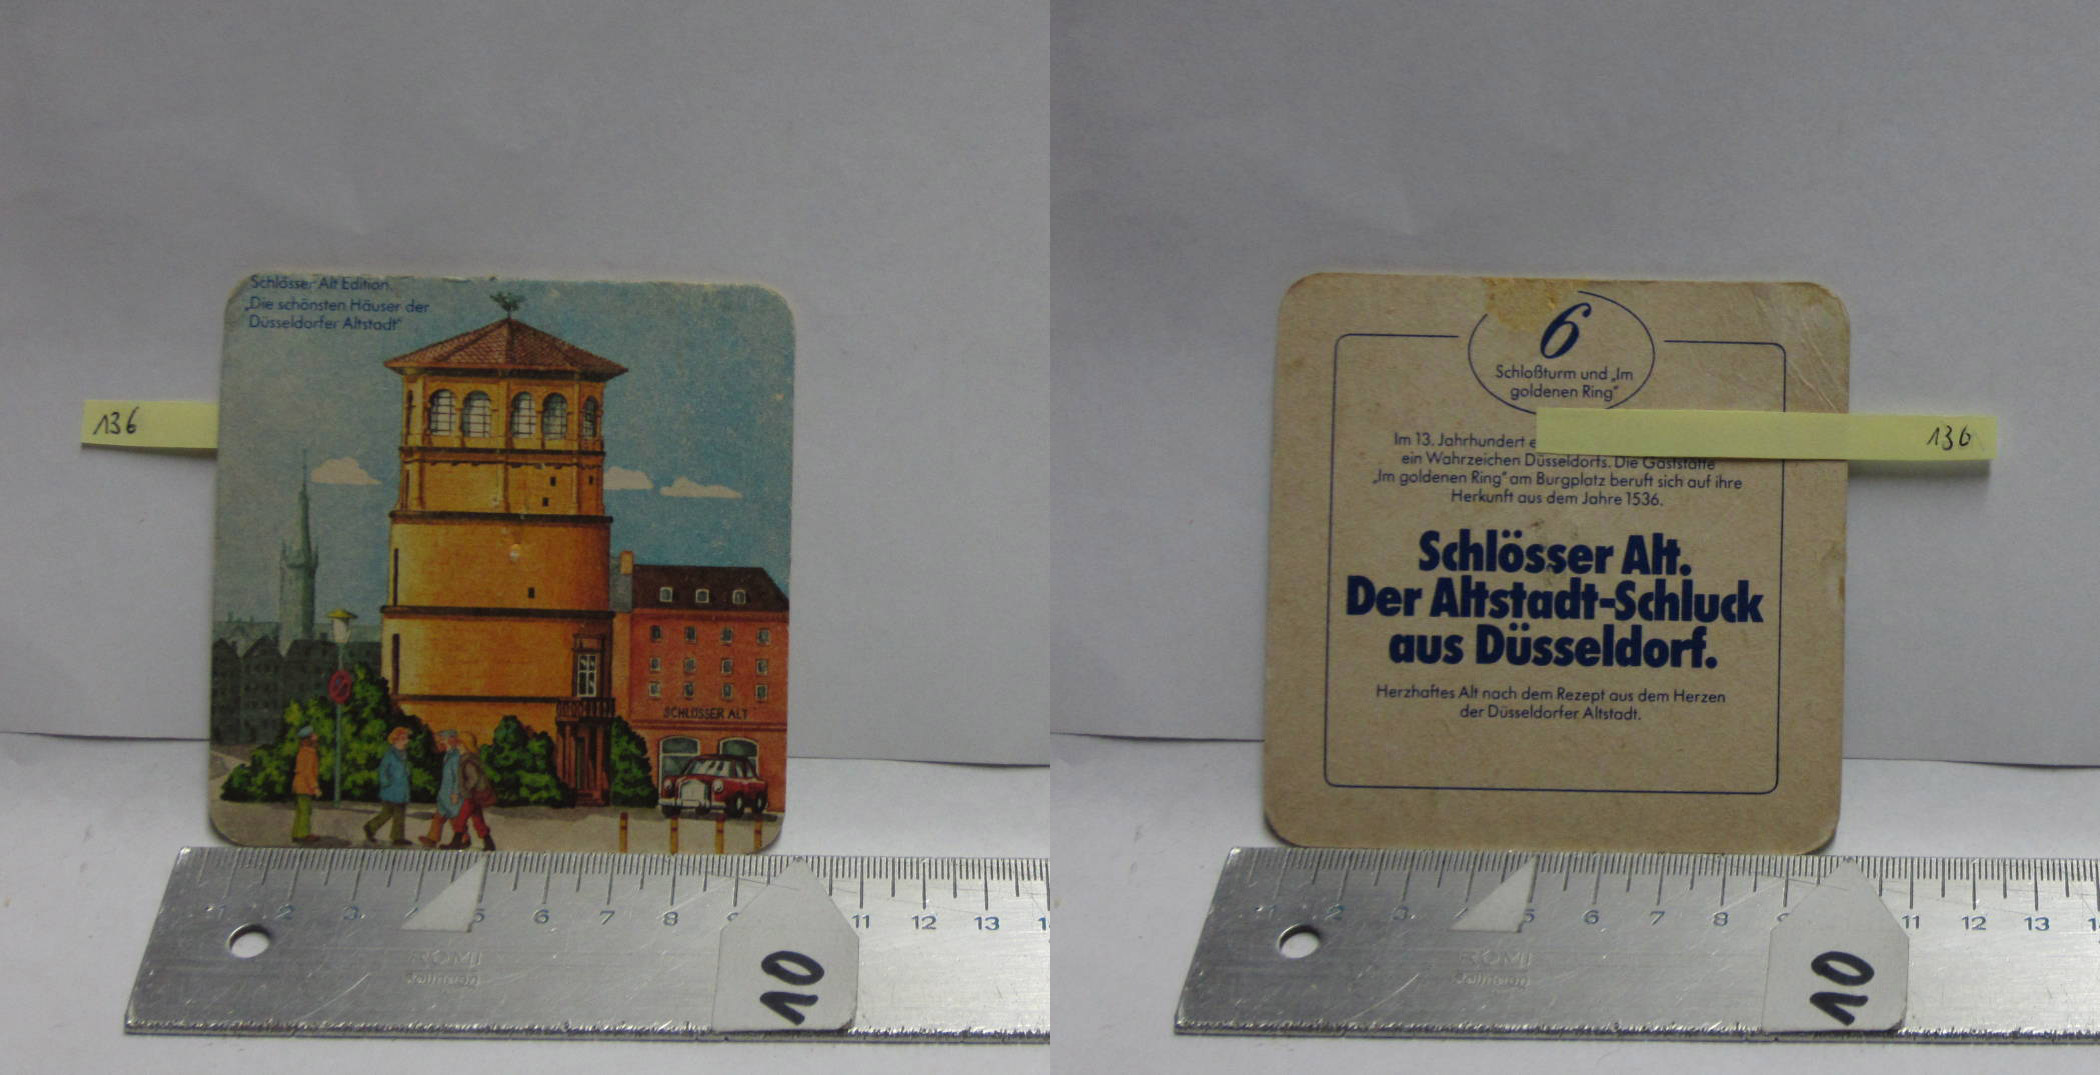 136 - Schlösser Alt / Schlösser Alt Edition Die schönsten Häuser der Düsseldorfer Altstadt Nr. 6